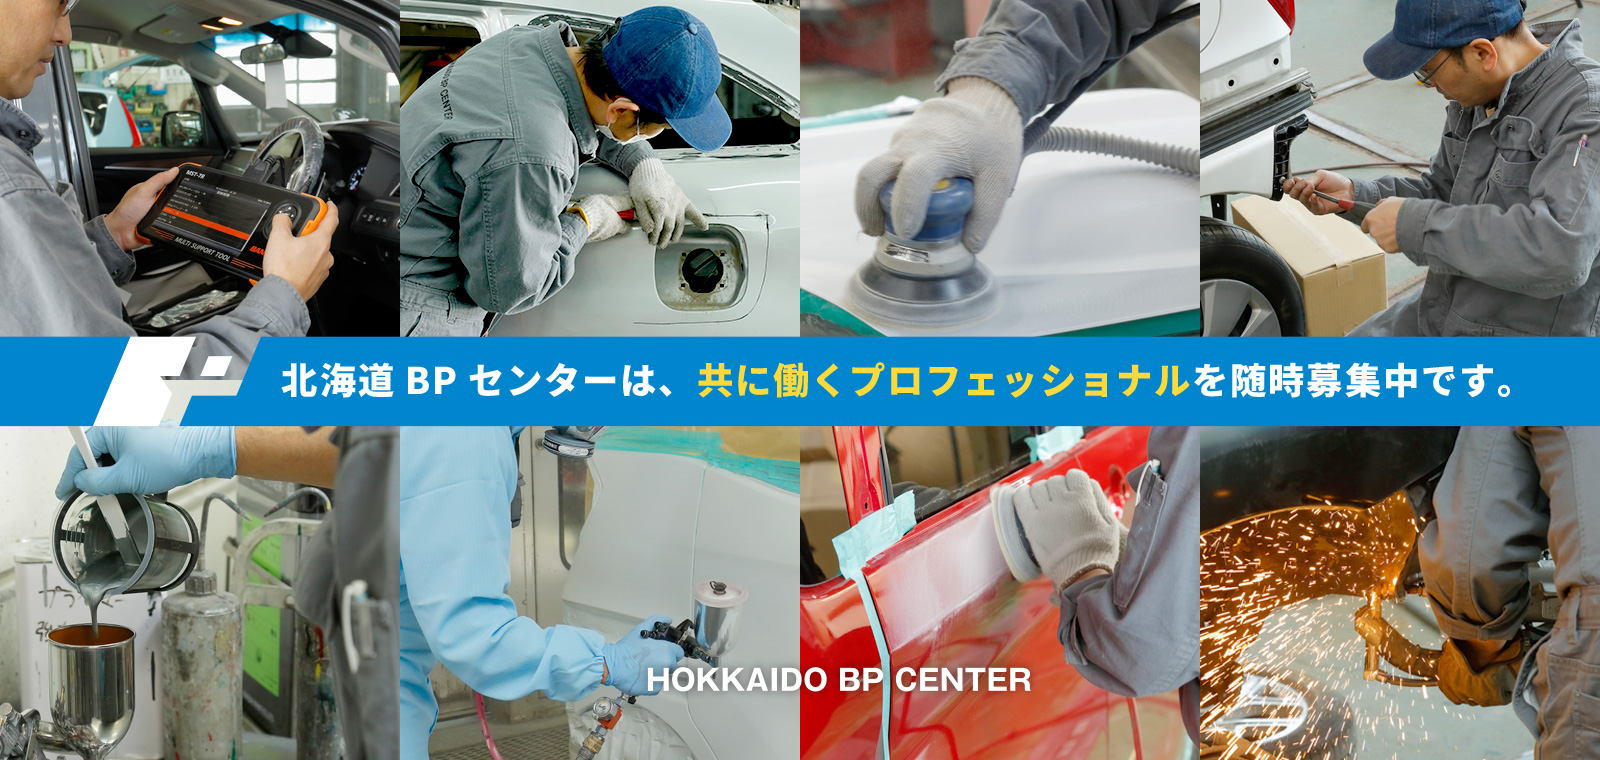 北海道BPセンターは、共に働くプロフェッショナルを随時募集中です。